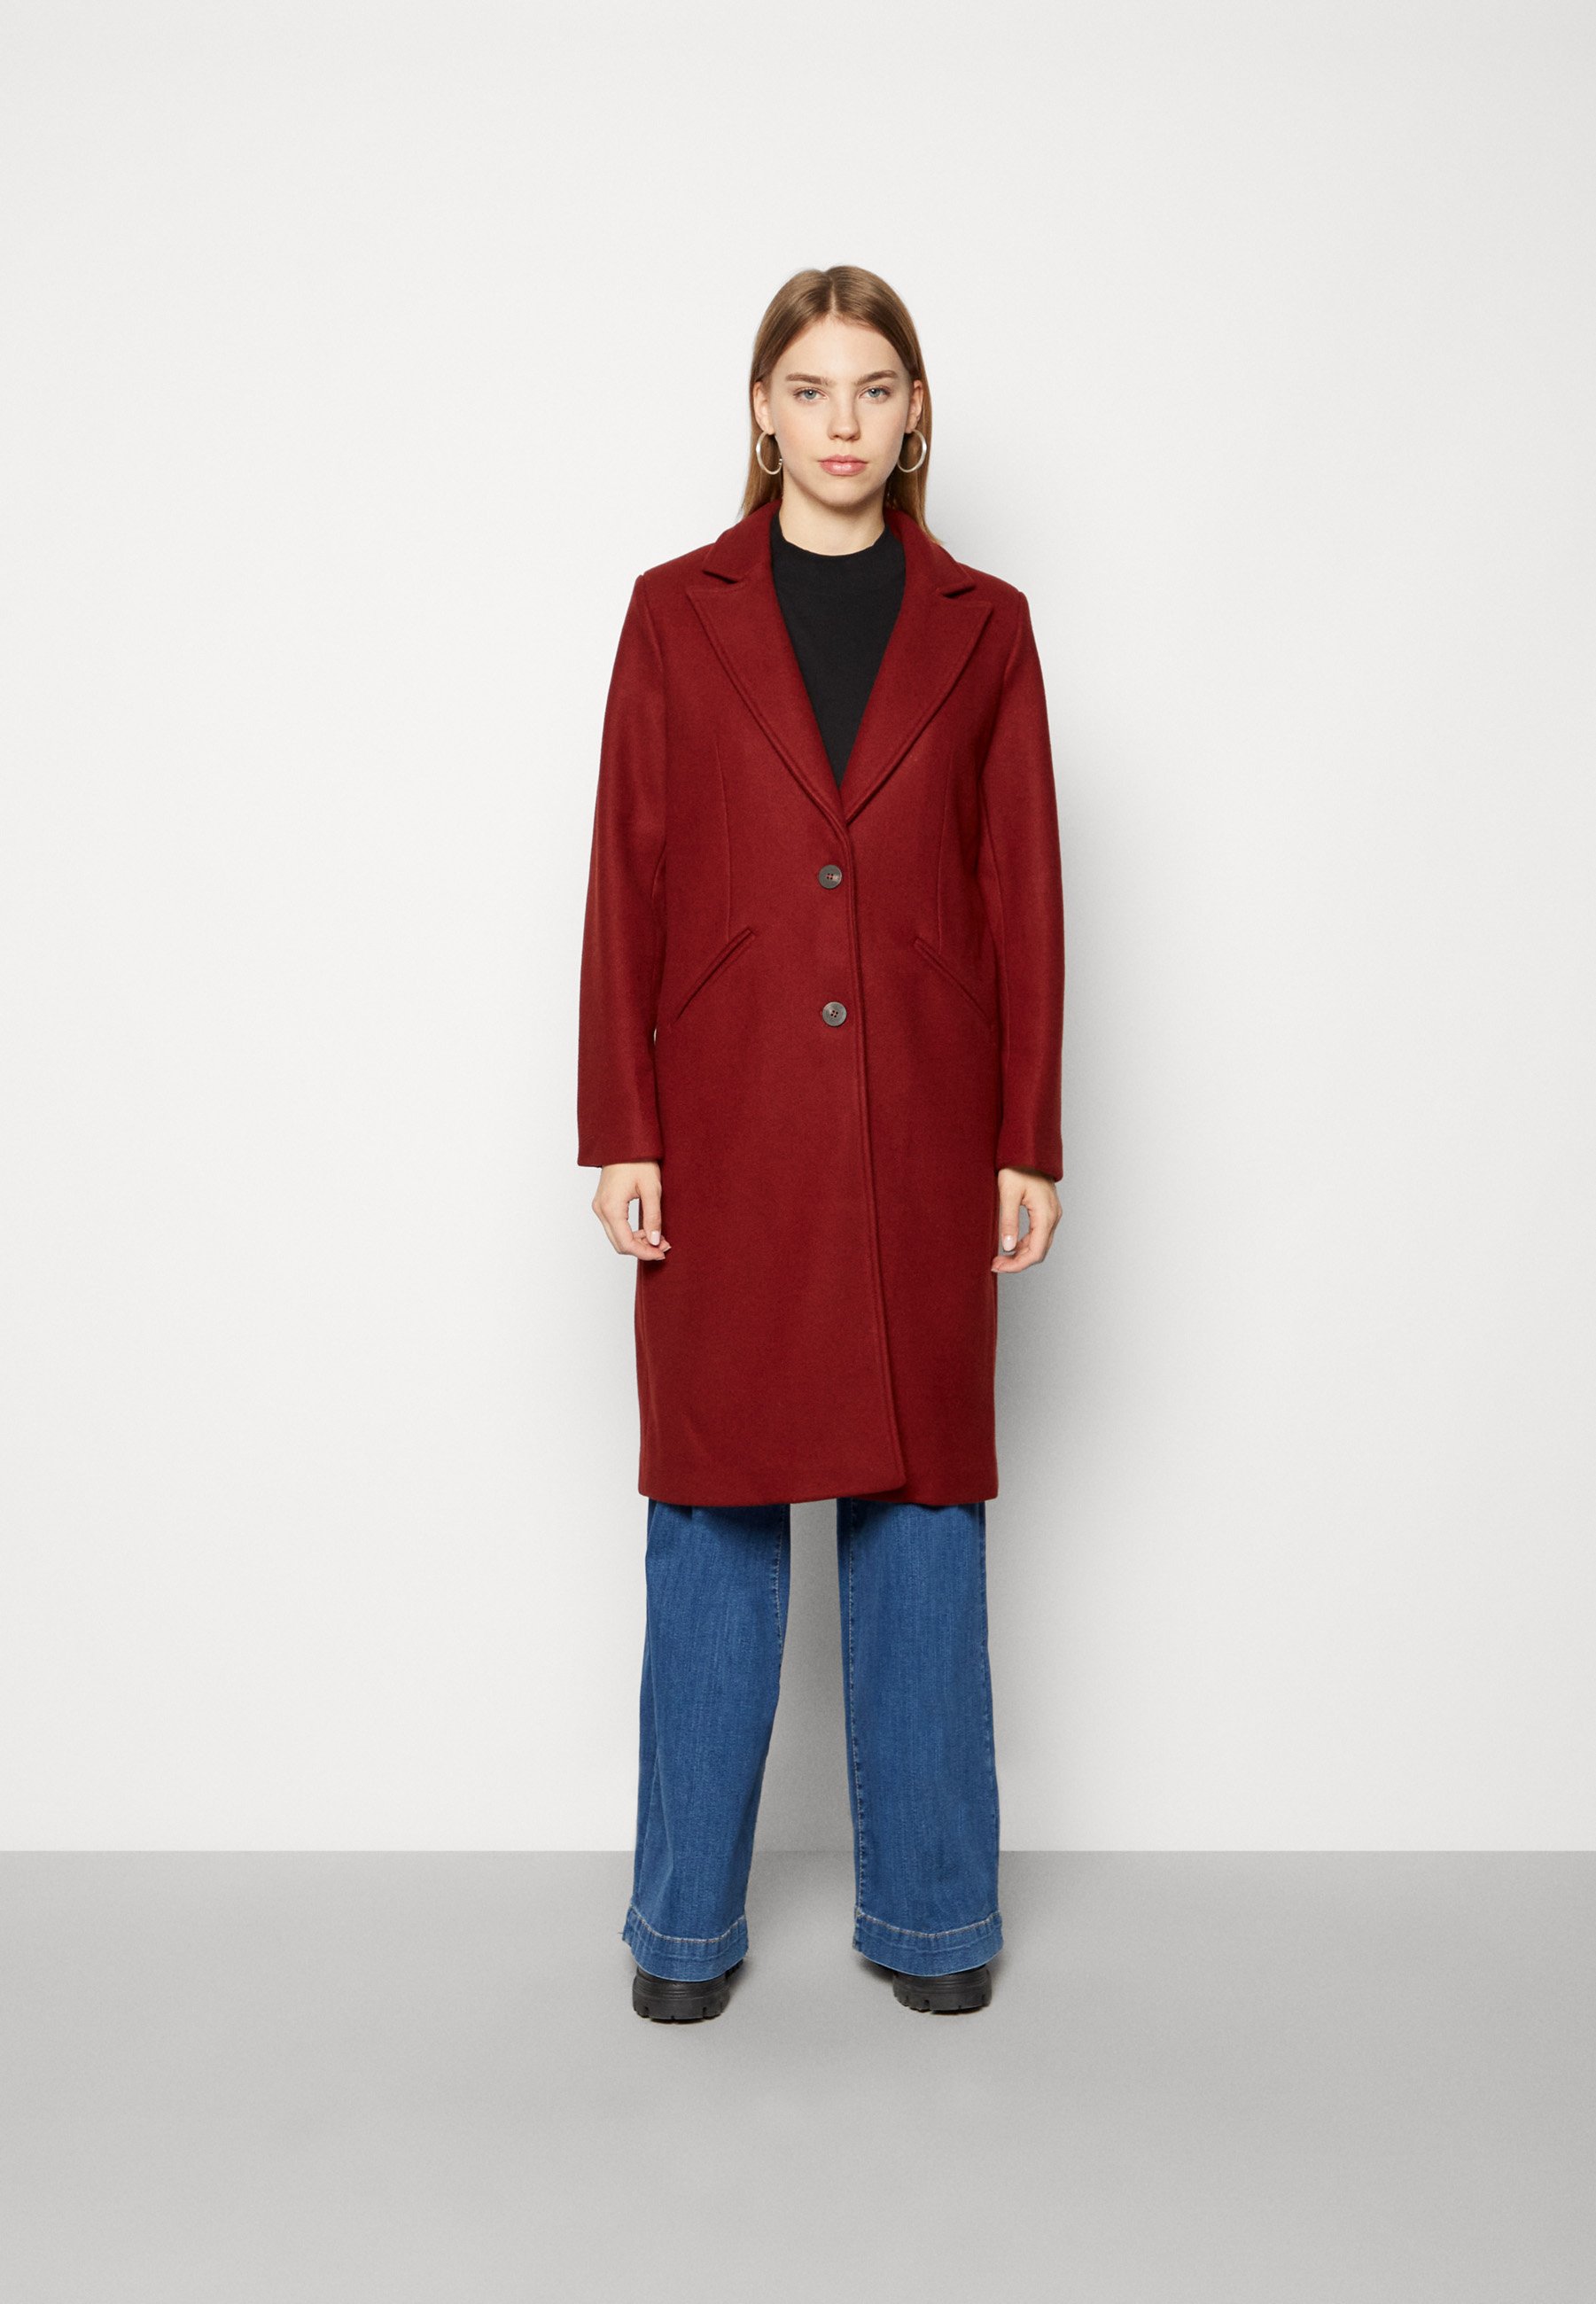 Пальто классическое Vila, fired brick пальто в стиле пэчворк женское backcountry цвет fired brick combo